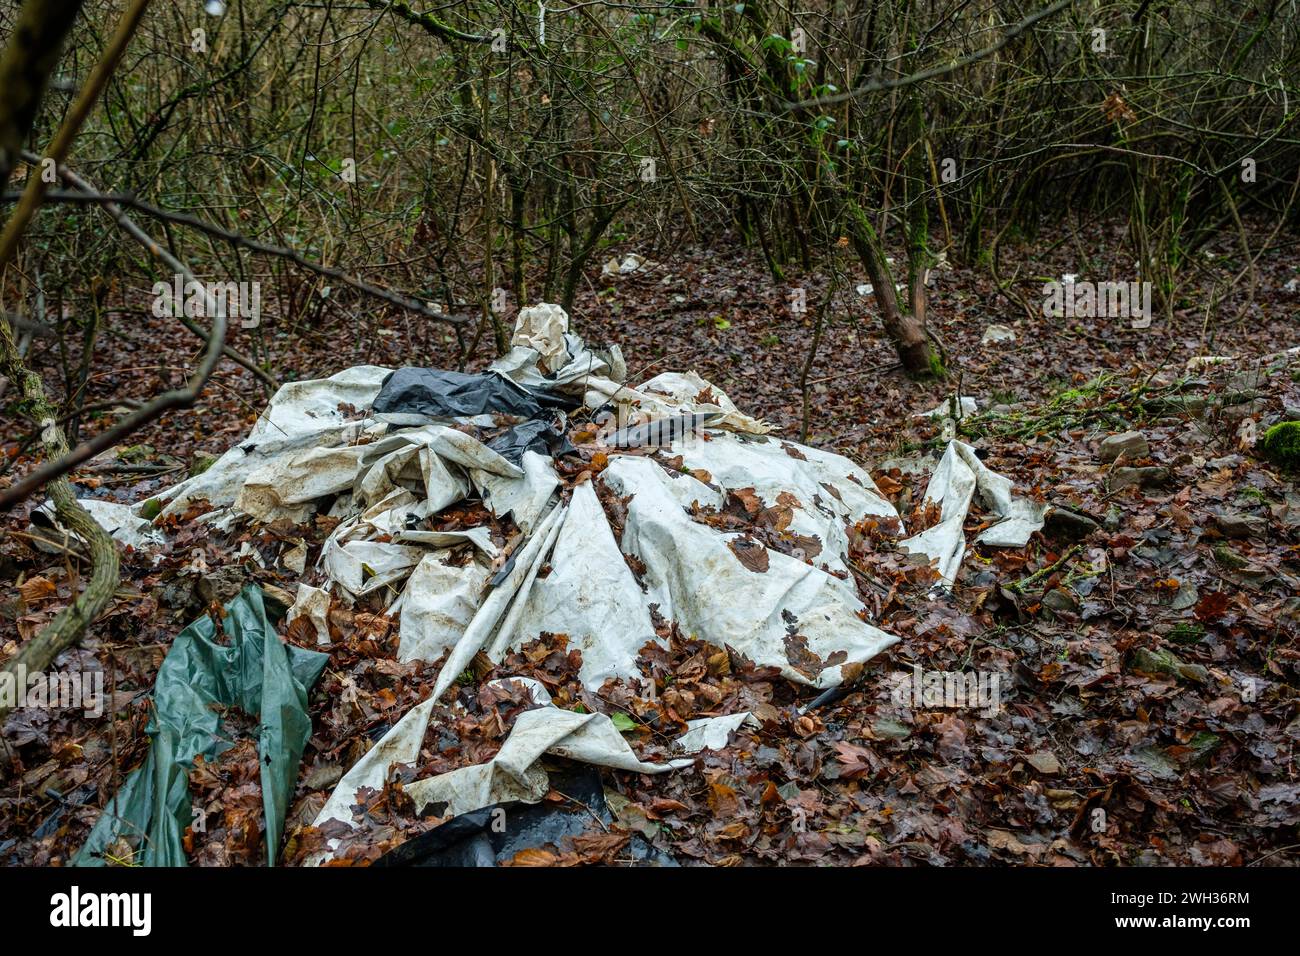 Vieilles baches plastiques abandonnees au detour d'un bois - Degradation fragmentee et lente |  Old plastic tarpaulins abandoned in a wood Stock Photo